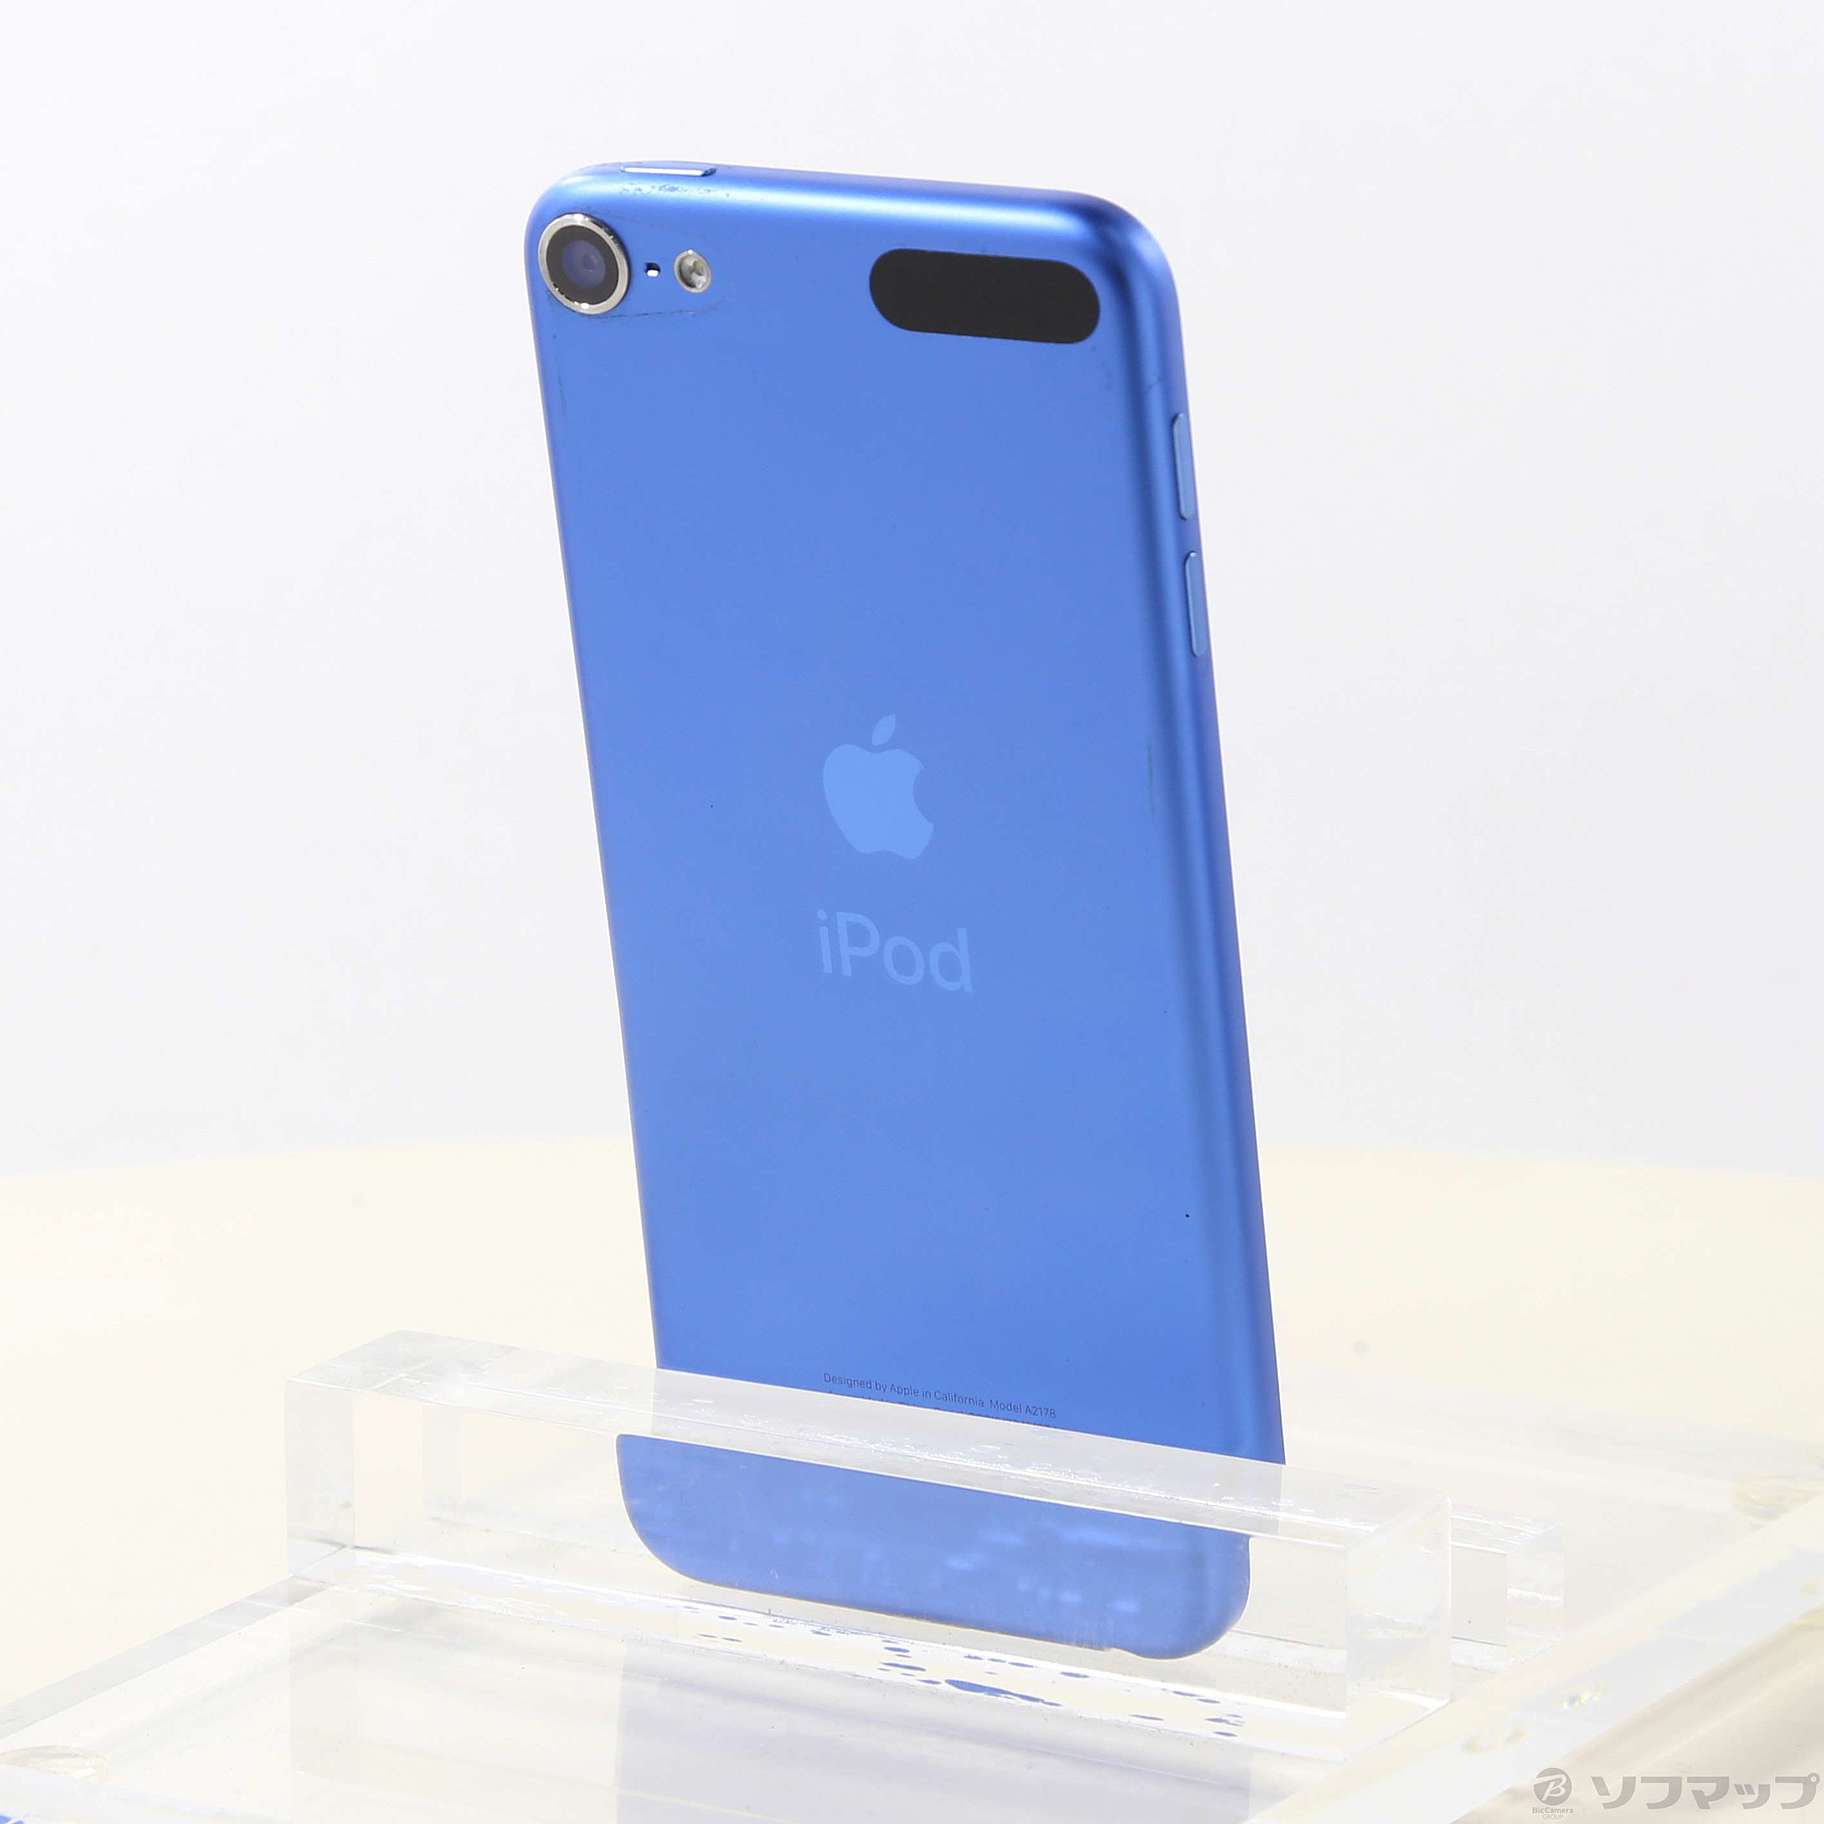 iPod touch 第7 世代 128GB ブルー MVJ32J/A写真で状態確認お願い致し ...